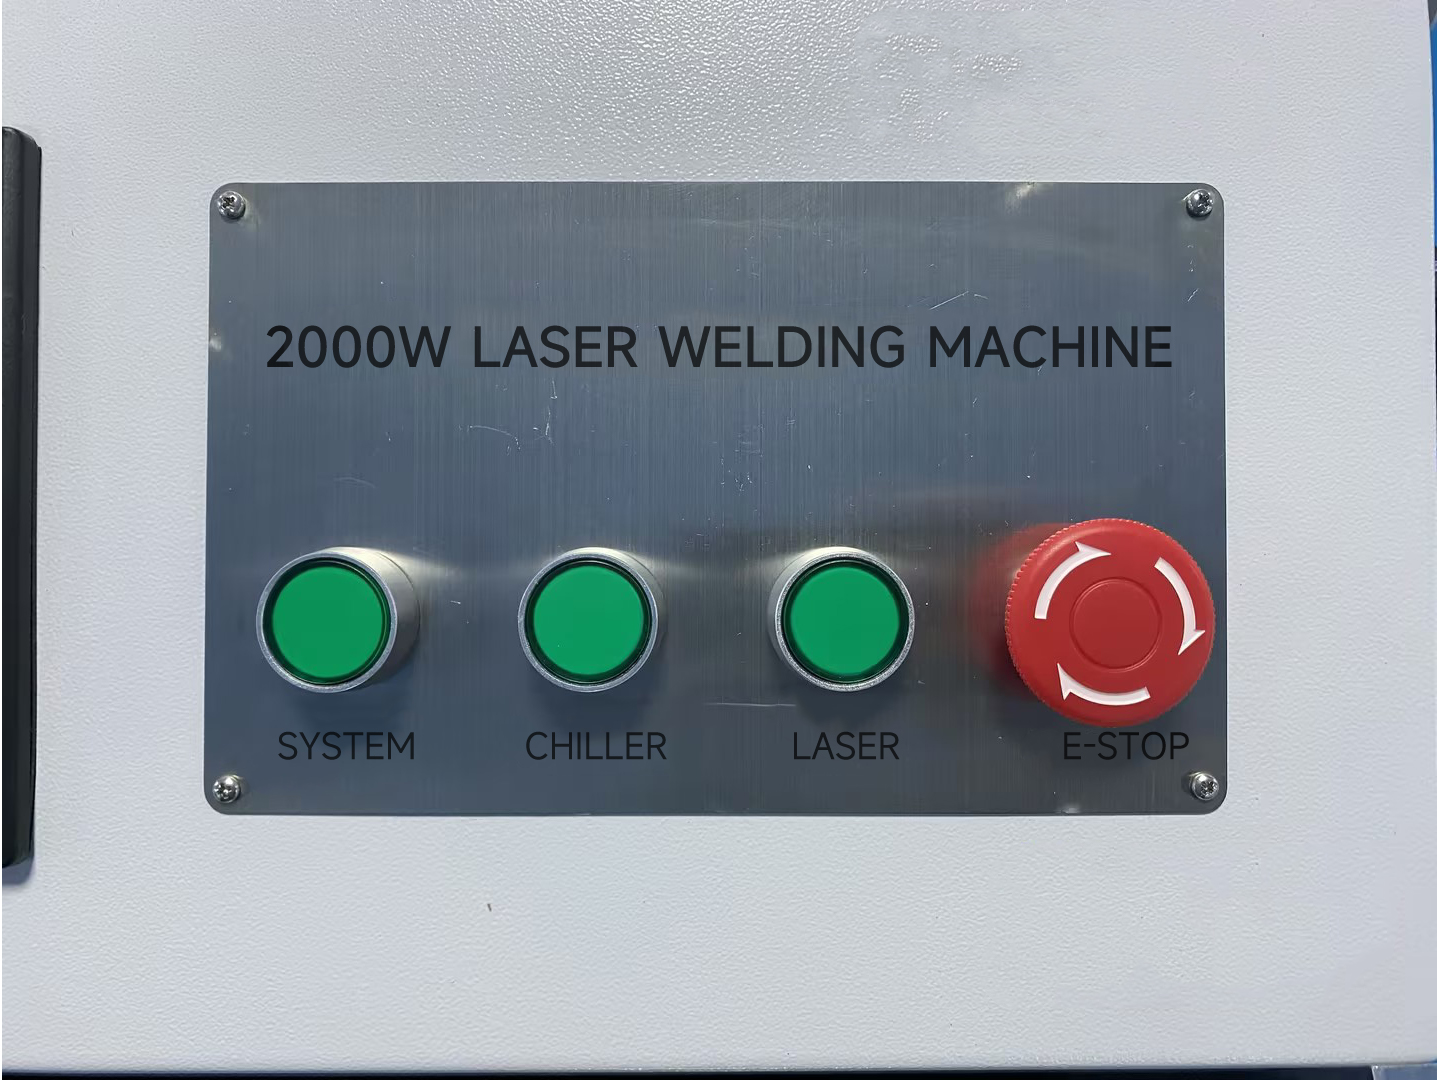 3 in 1 laser welding machine